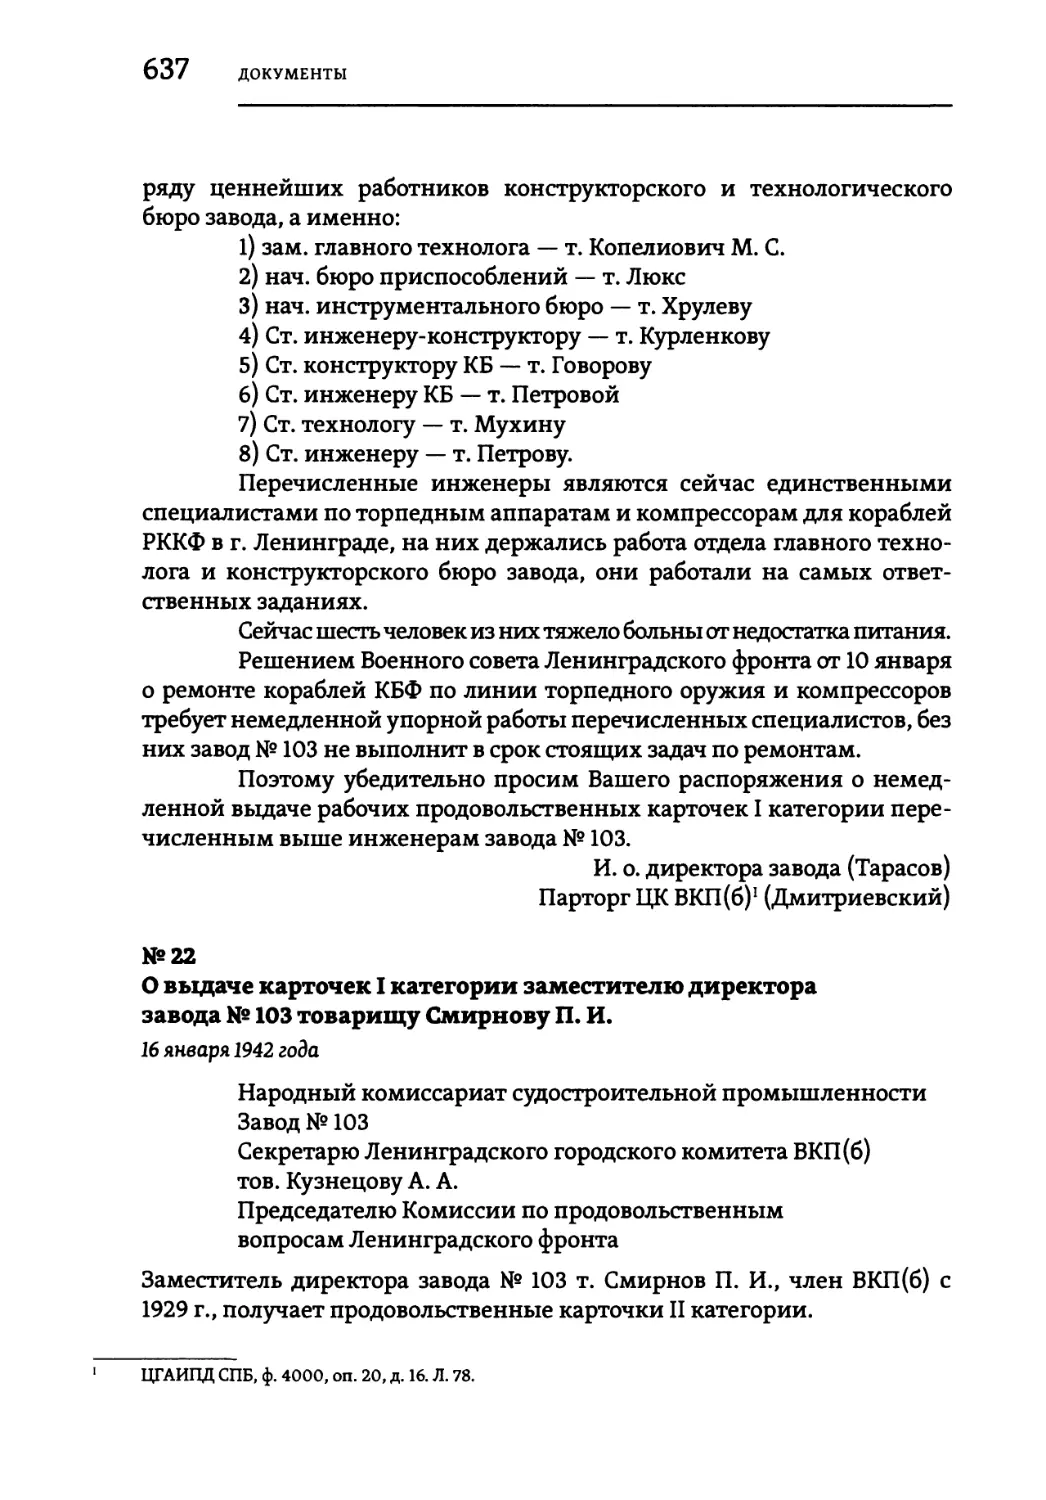 №22 О выдаче карточек I категории заместителю директора завода № 103 товарищу Смирнову П. И